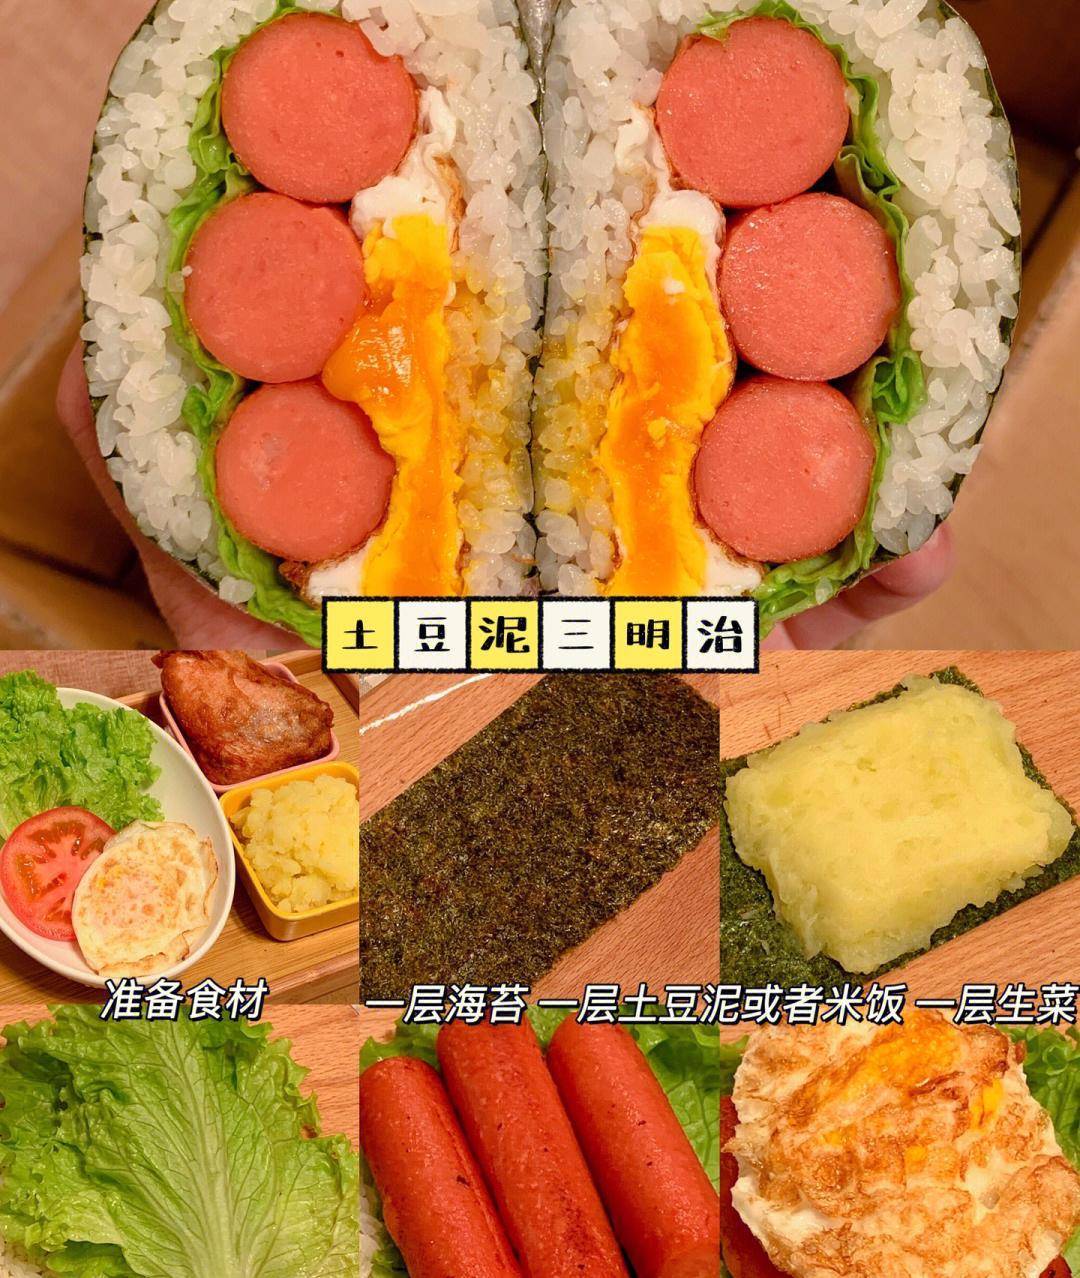 叠紫菜三明治图片